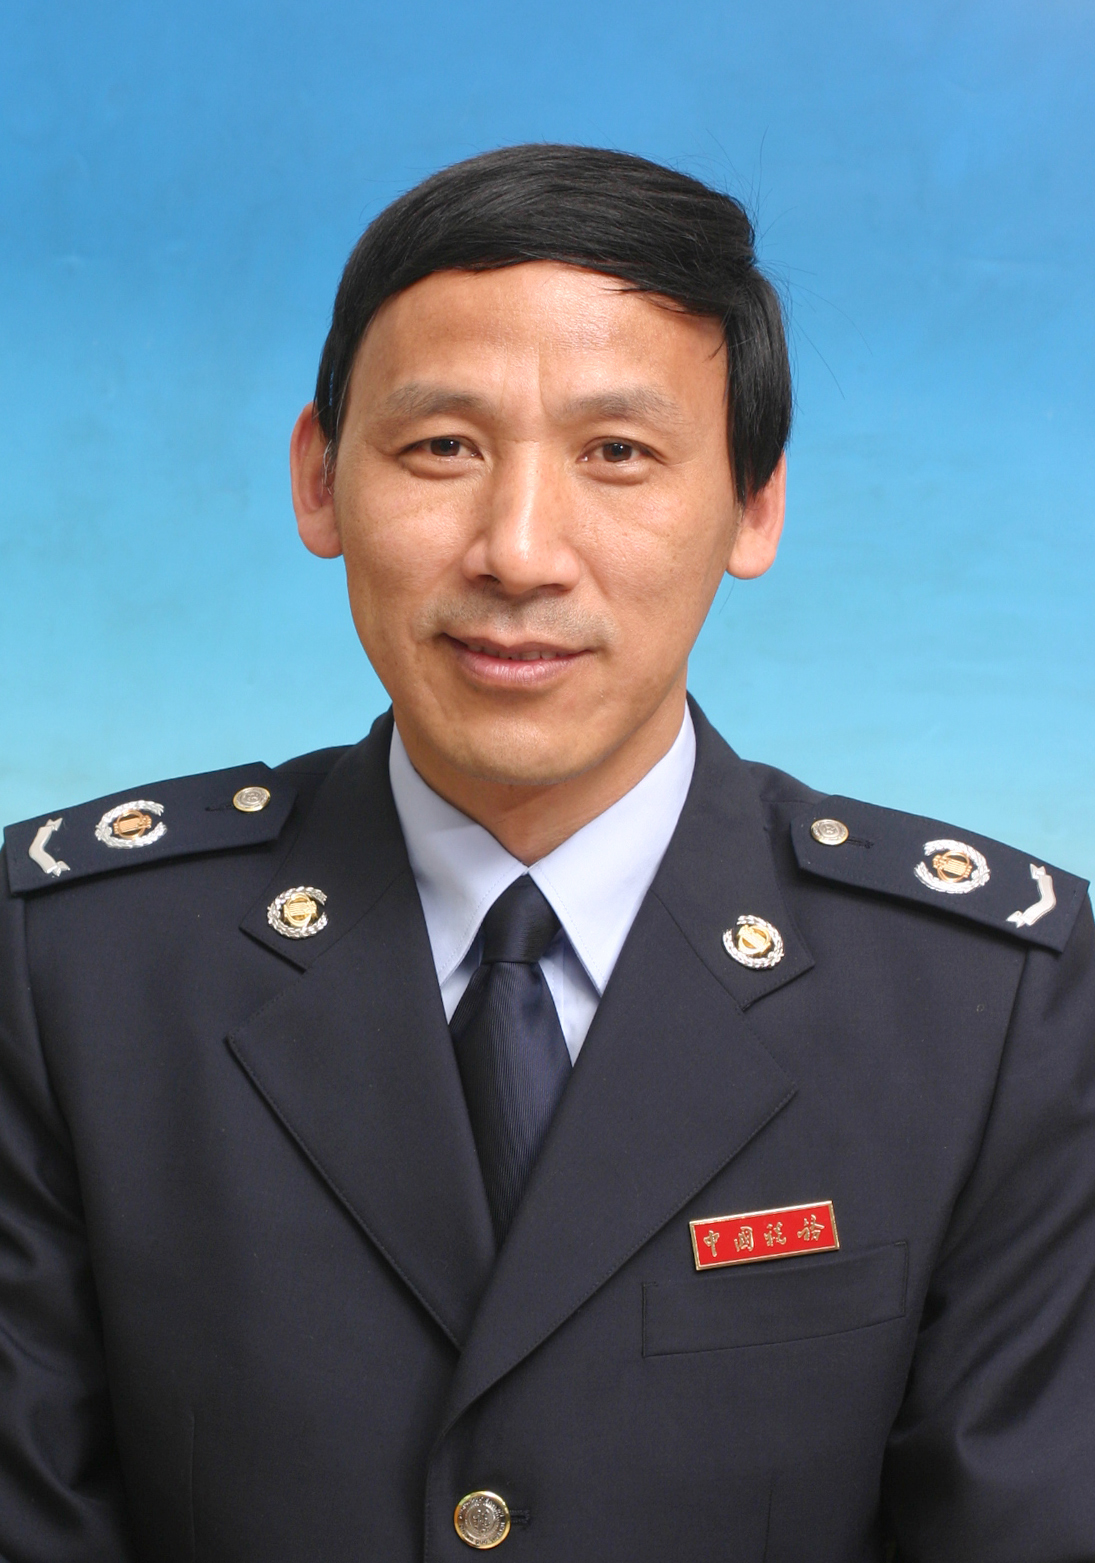 李彦平,男,1963年1月出生,中共党员,国家税务总局石家庄市长安区税务